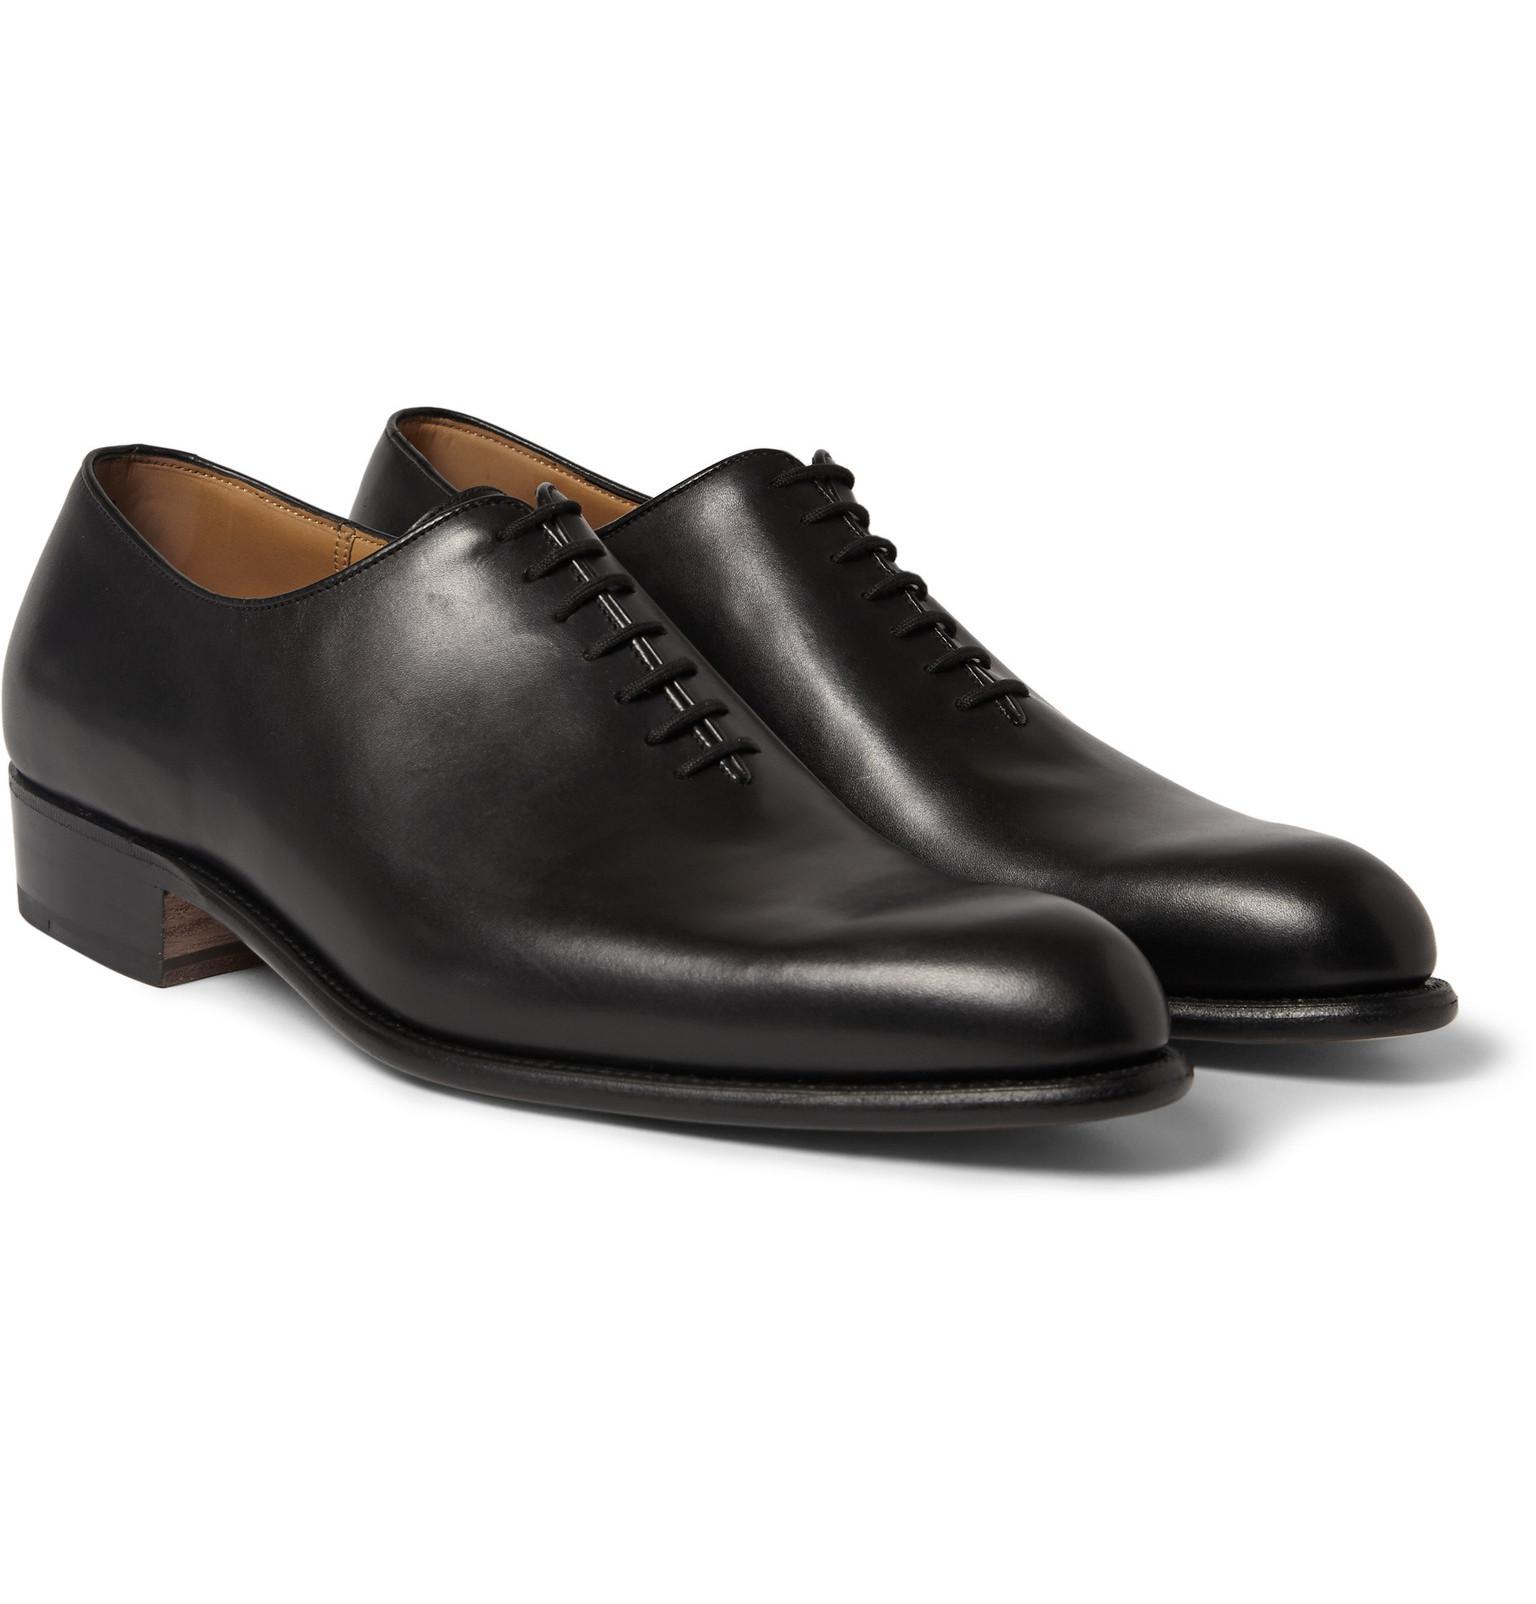 J.M. Weston - 402 Flore Leather Oxford Shoes - Black for Men